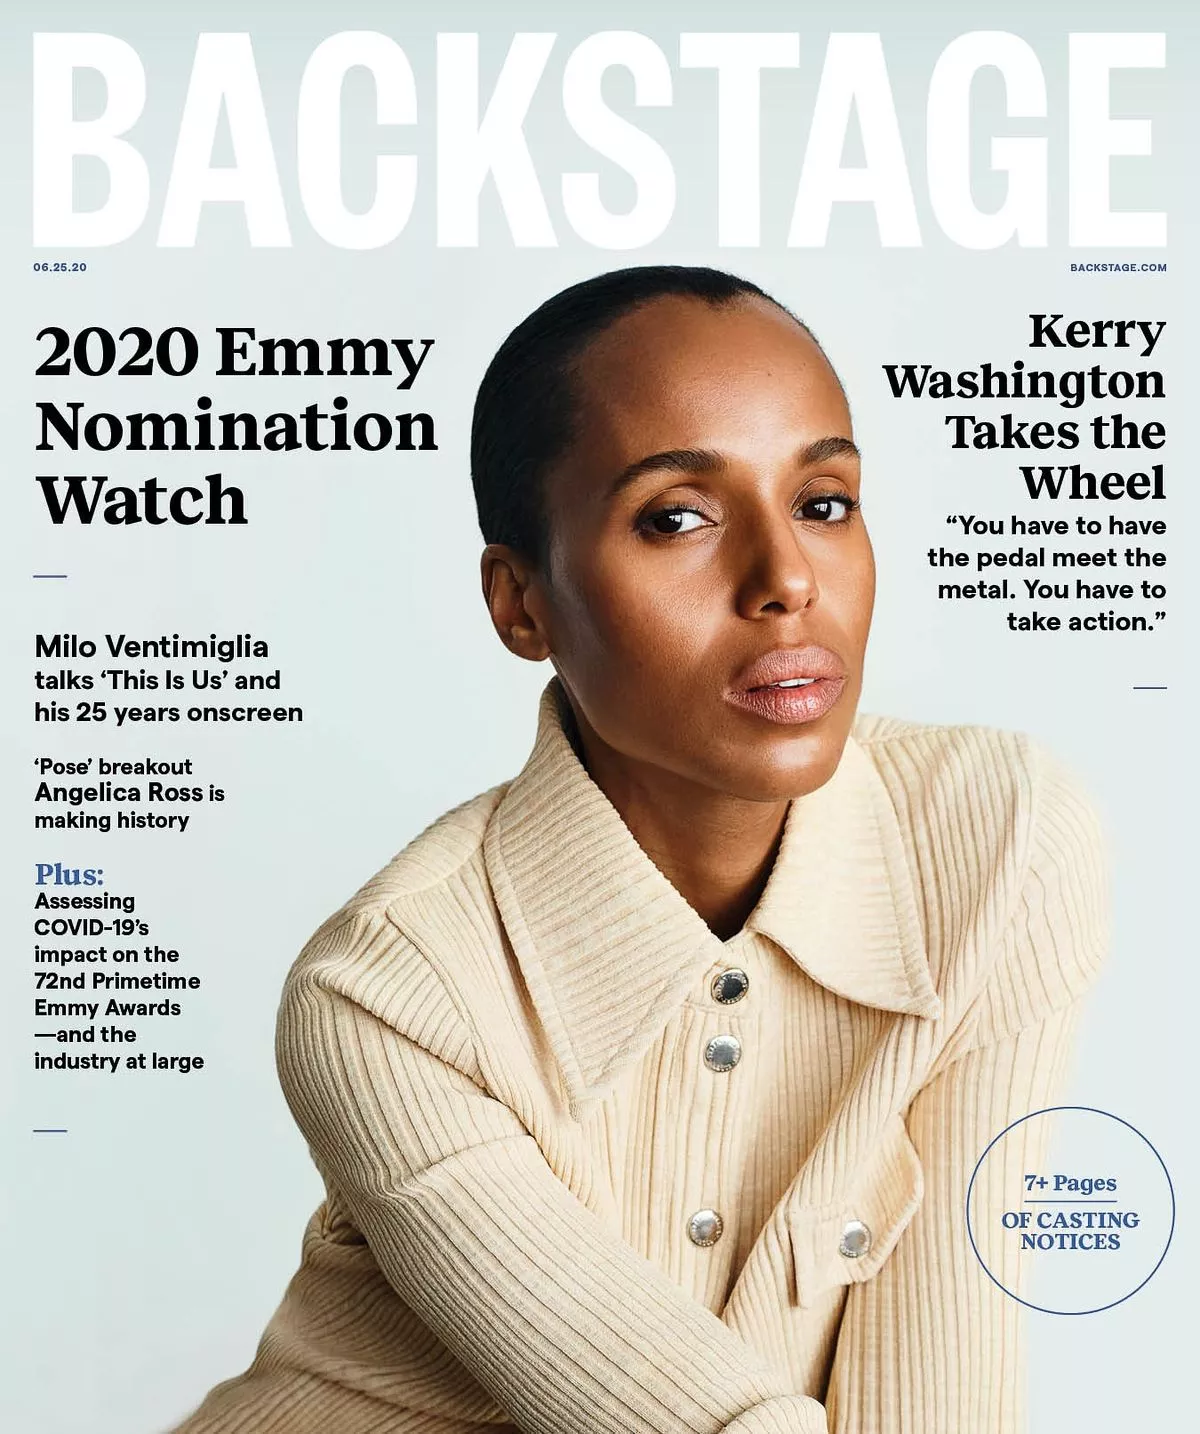 Керри Вашингтон на обложке журнала Backstage